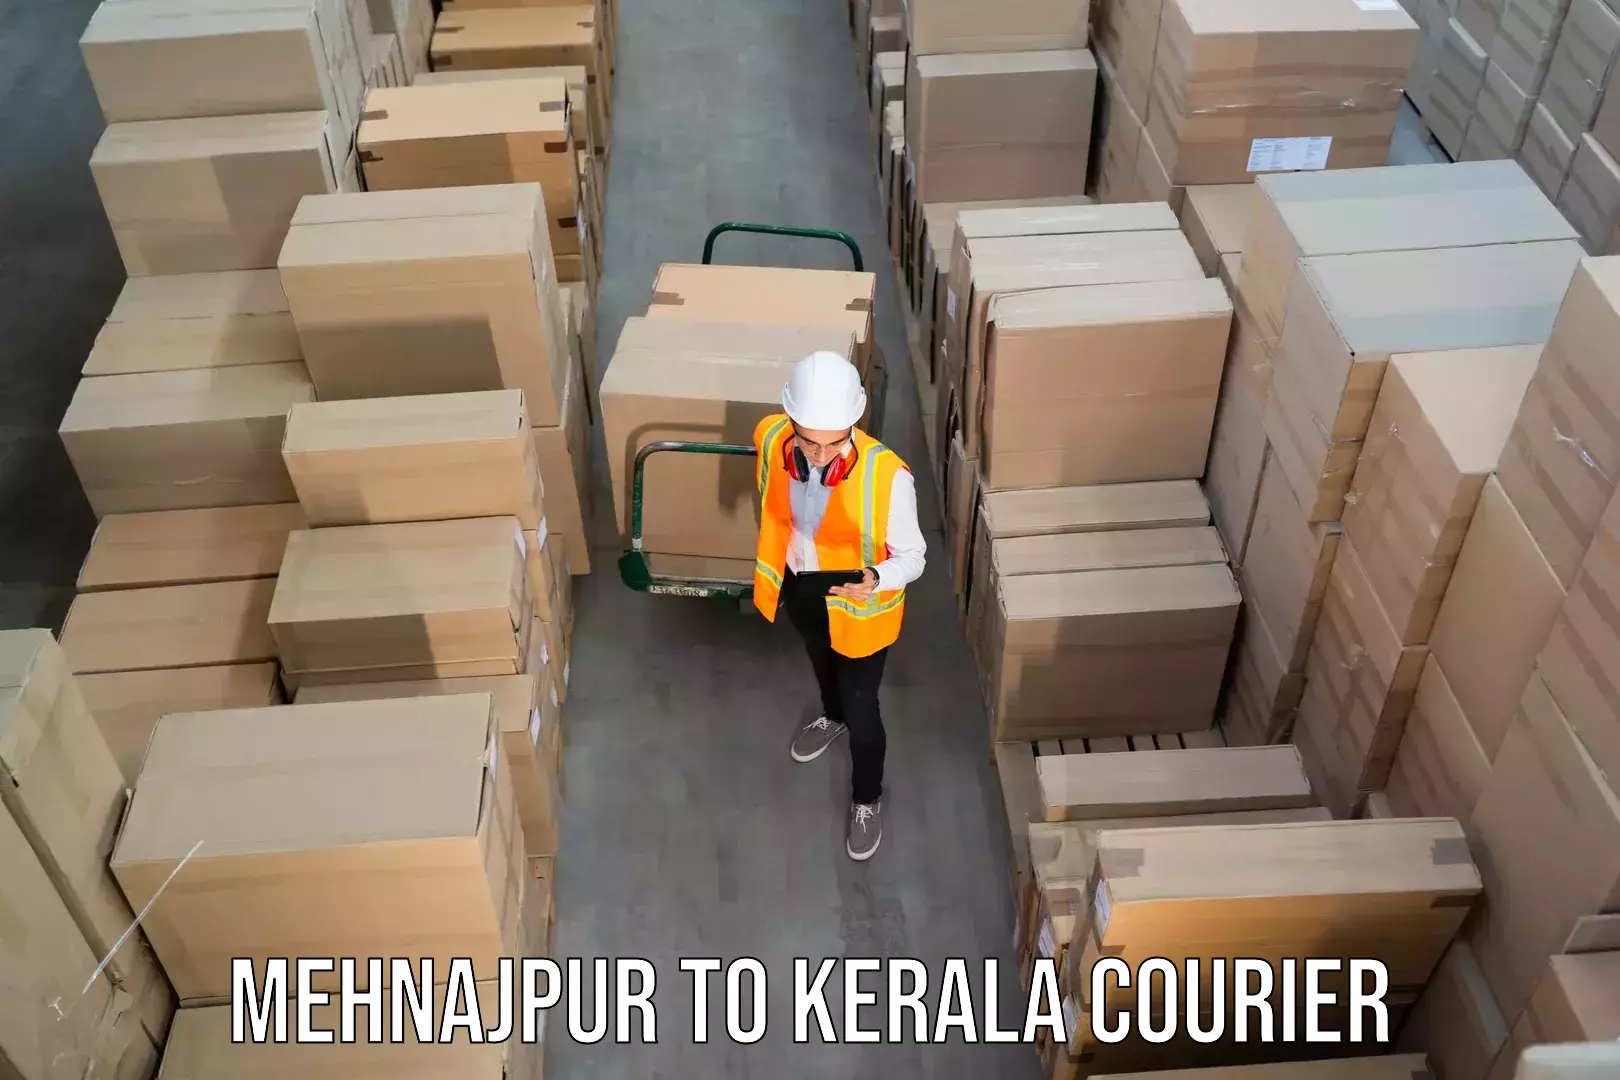 Urban courier service Mehnajpur to Pazhayannur